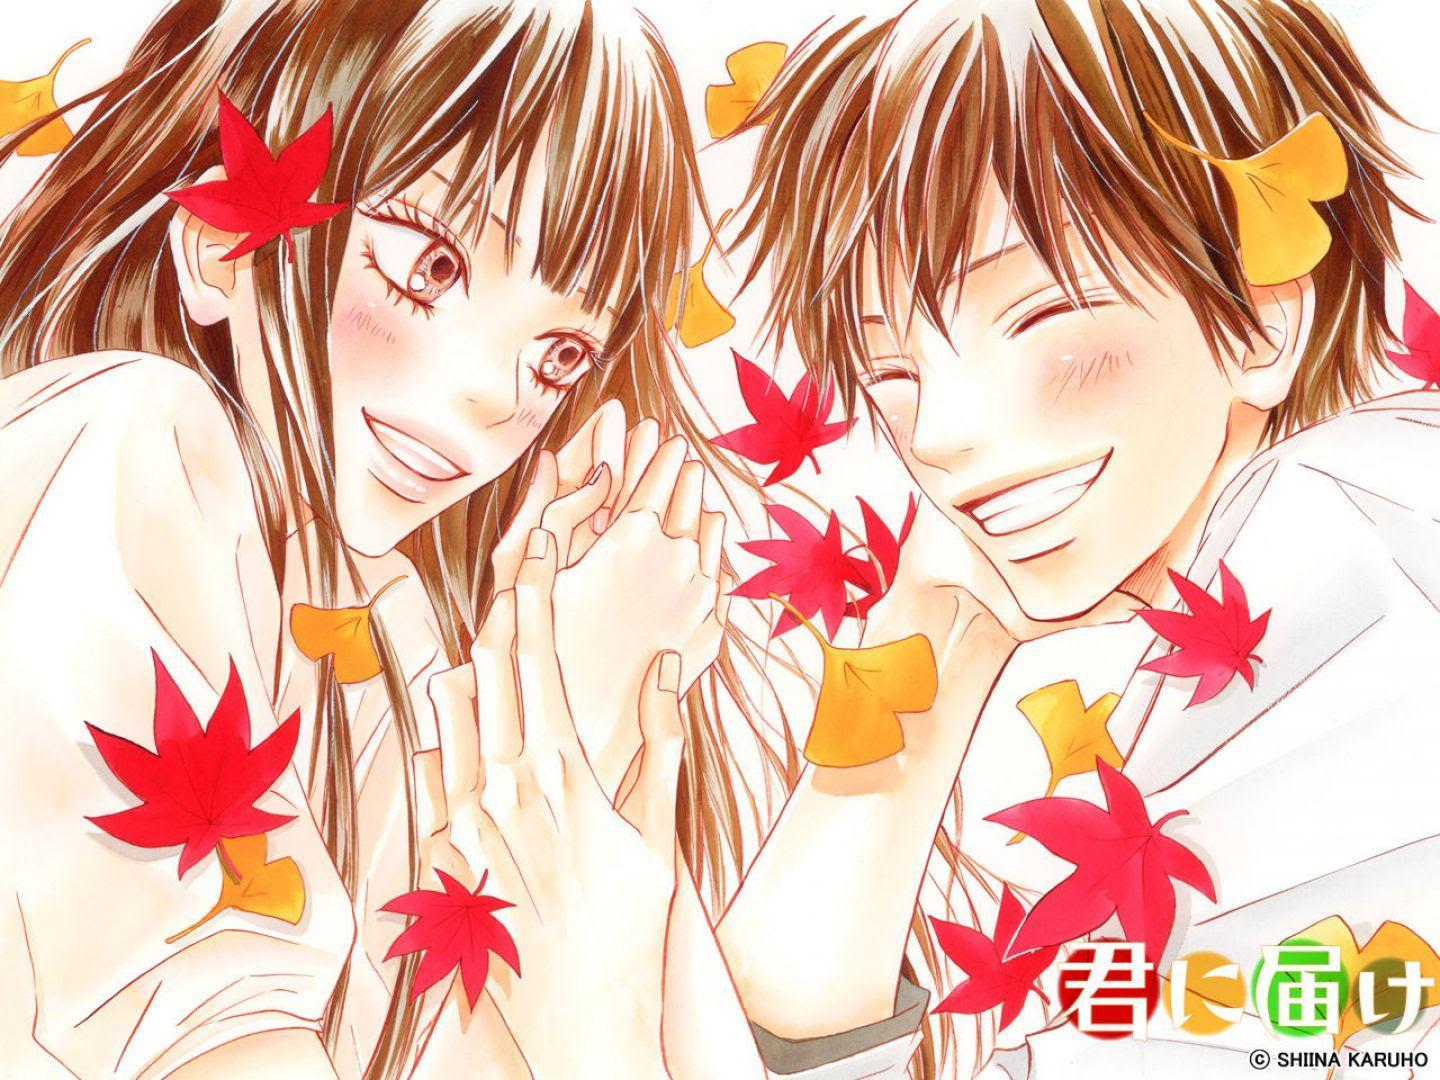 [PIC] Hình anime mùa thu rực đỏ ánh cam 1005231904